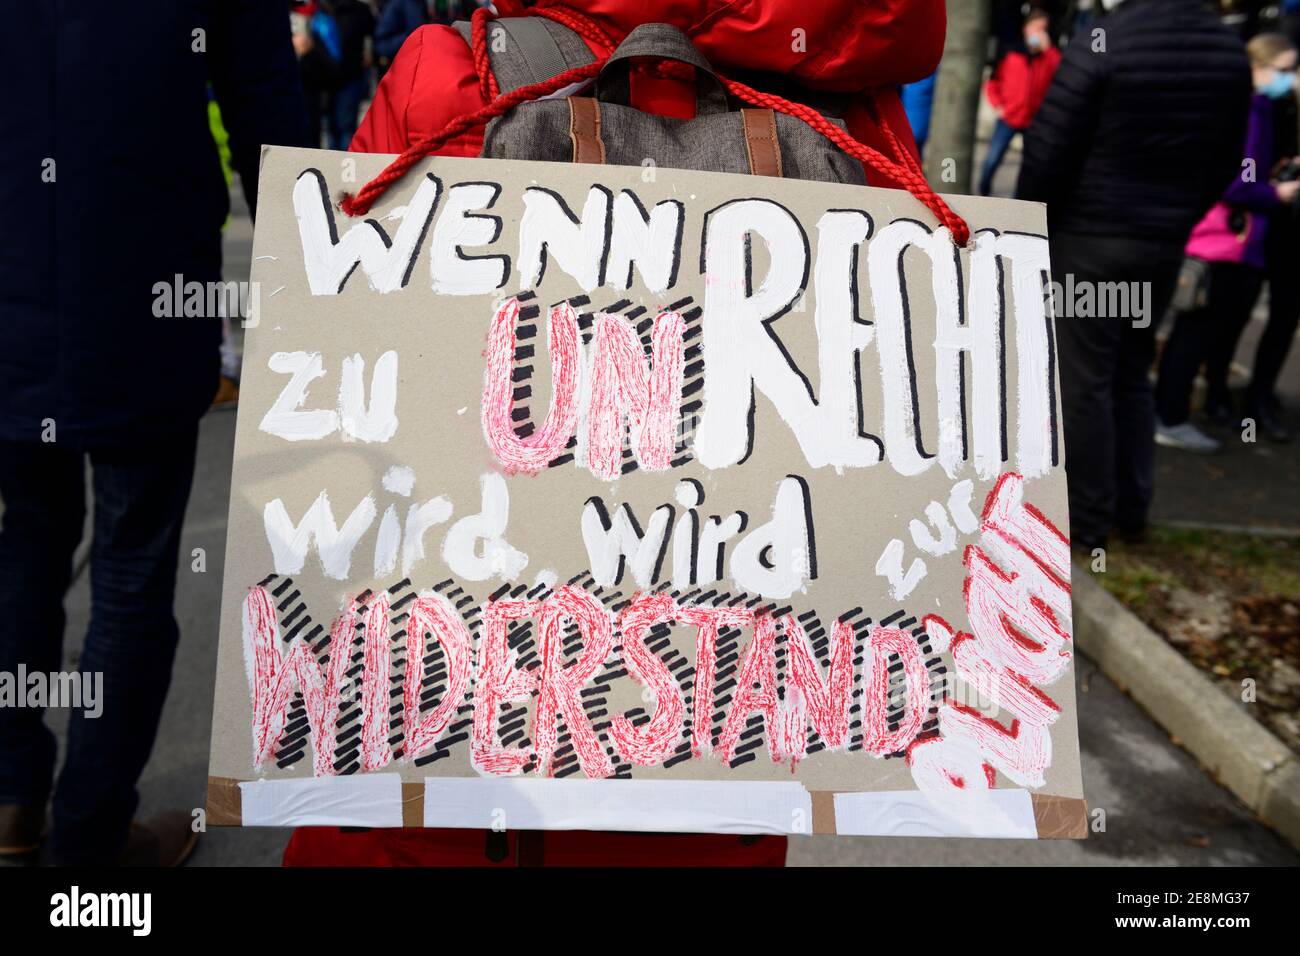 Januar 31, 2021. Wien, Österreich. Eine nicht registrierte Anti-Corona-Demonstration mit mehreren tausend Menschen wurde von der Polizei eingekreist und zerbrochen. Ein Zeichen, das lautet: "Wenn Recht falsch wird, wird Widerstand Pflicht". Stockfoto